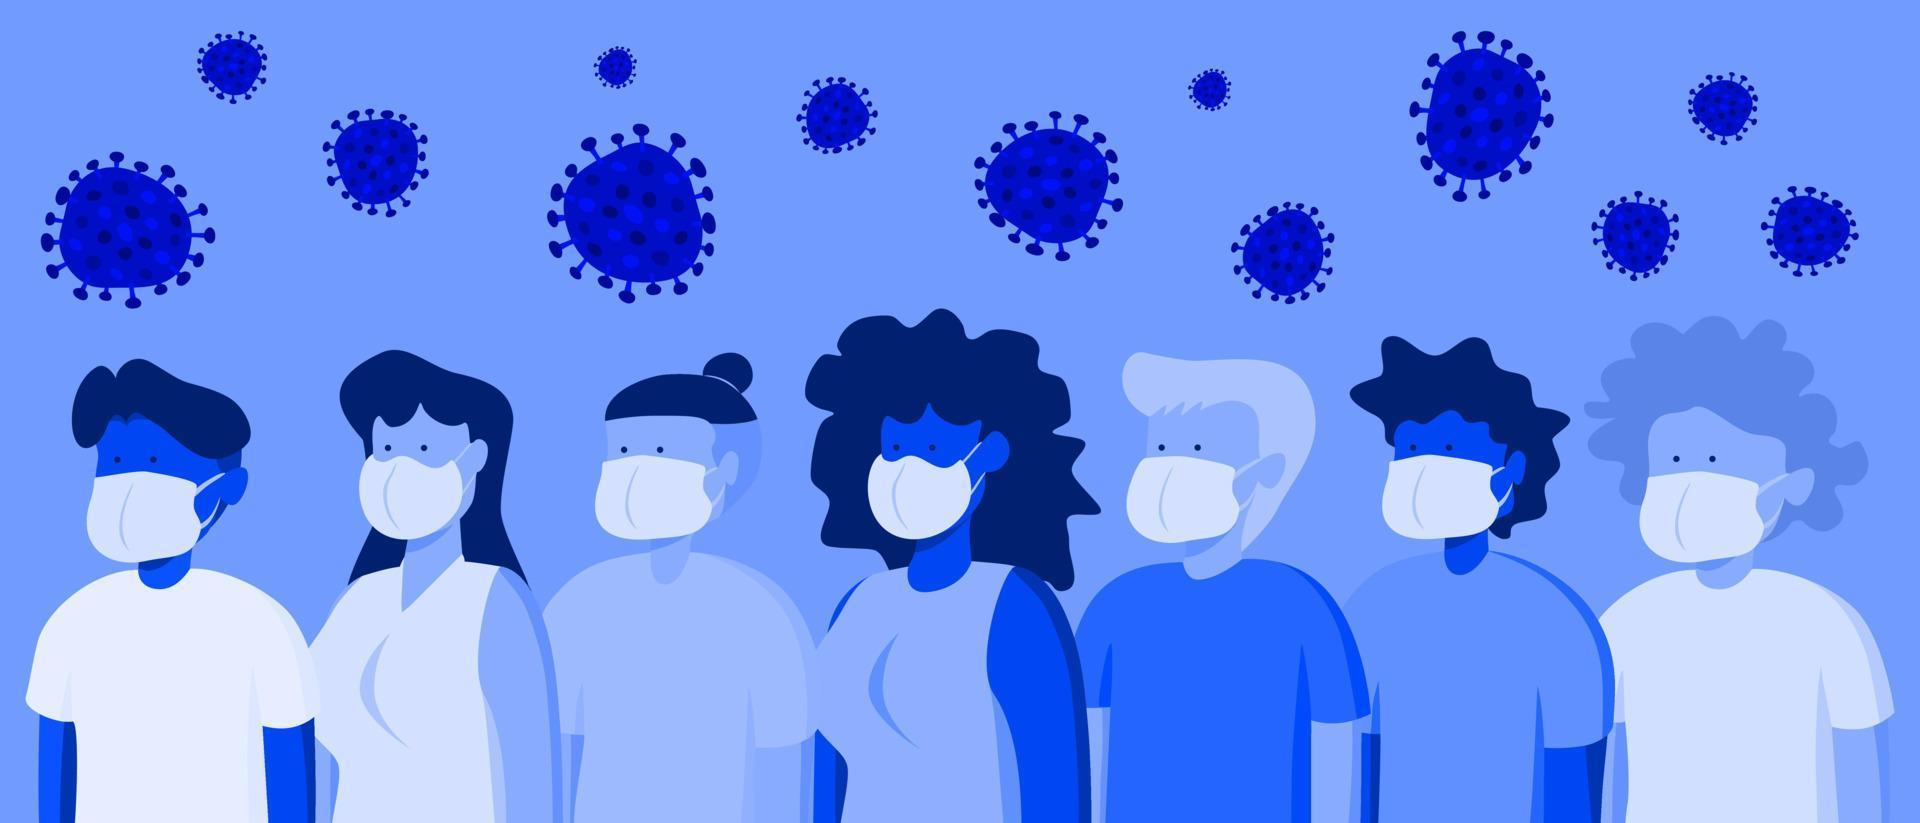 illustrationen flaches design einer gruppe von menschen, die medizinische masken tragen, um krankheiten vorzubeugen vektor